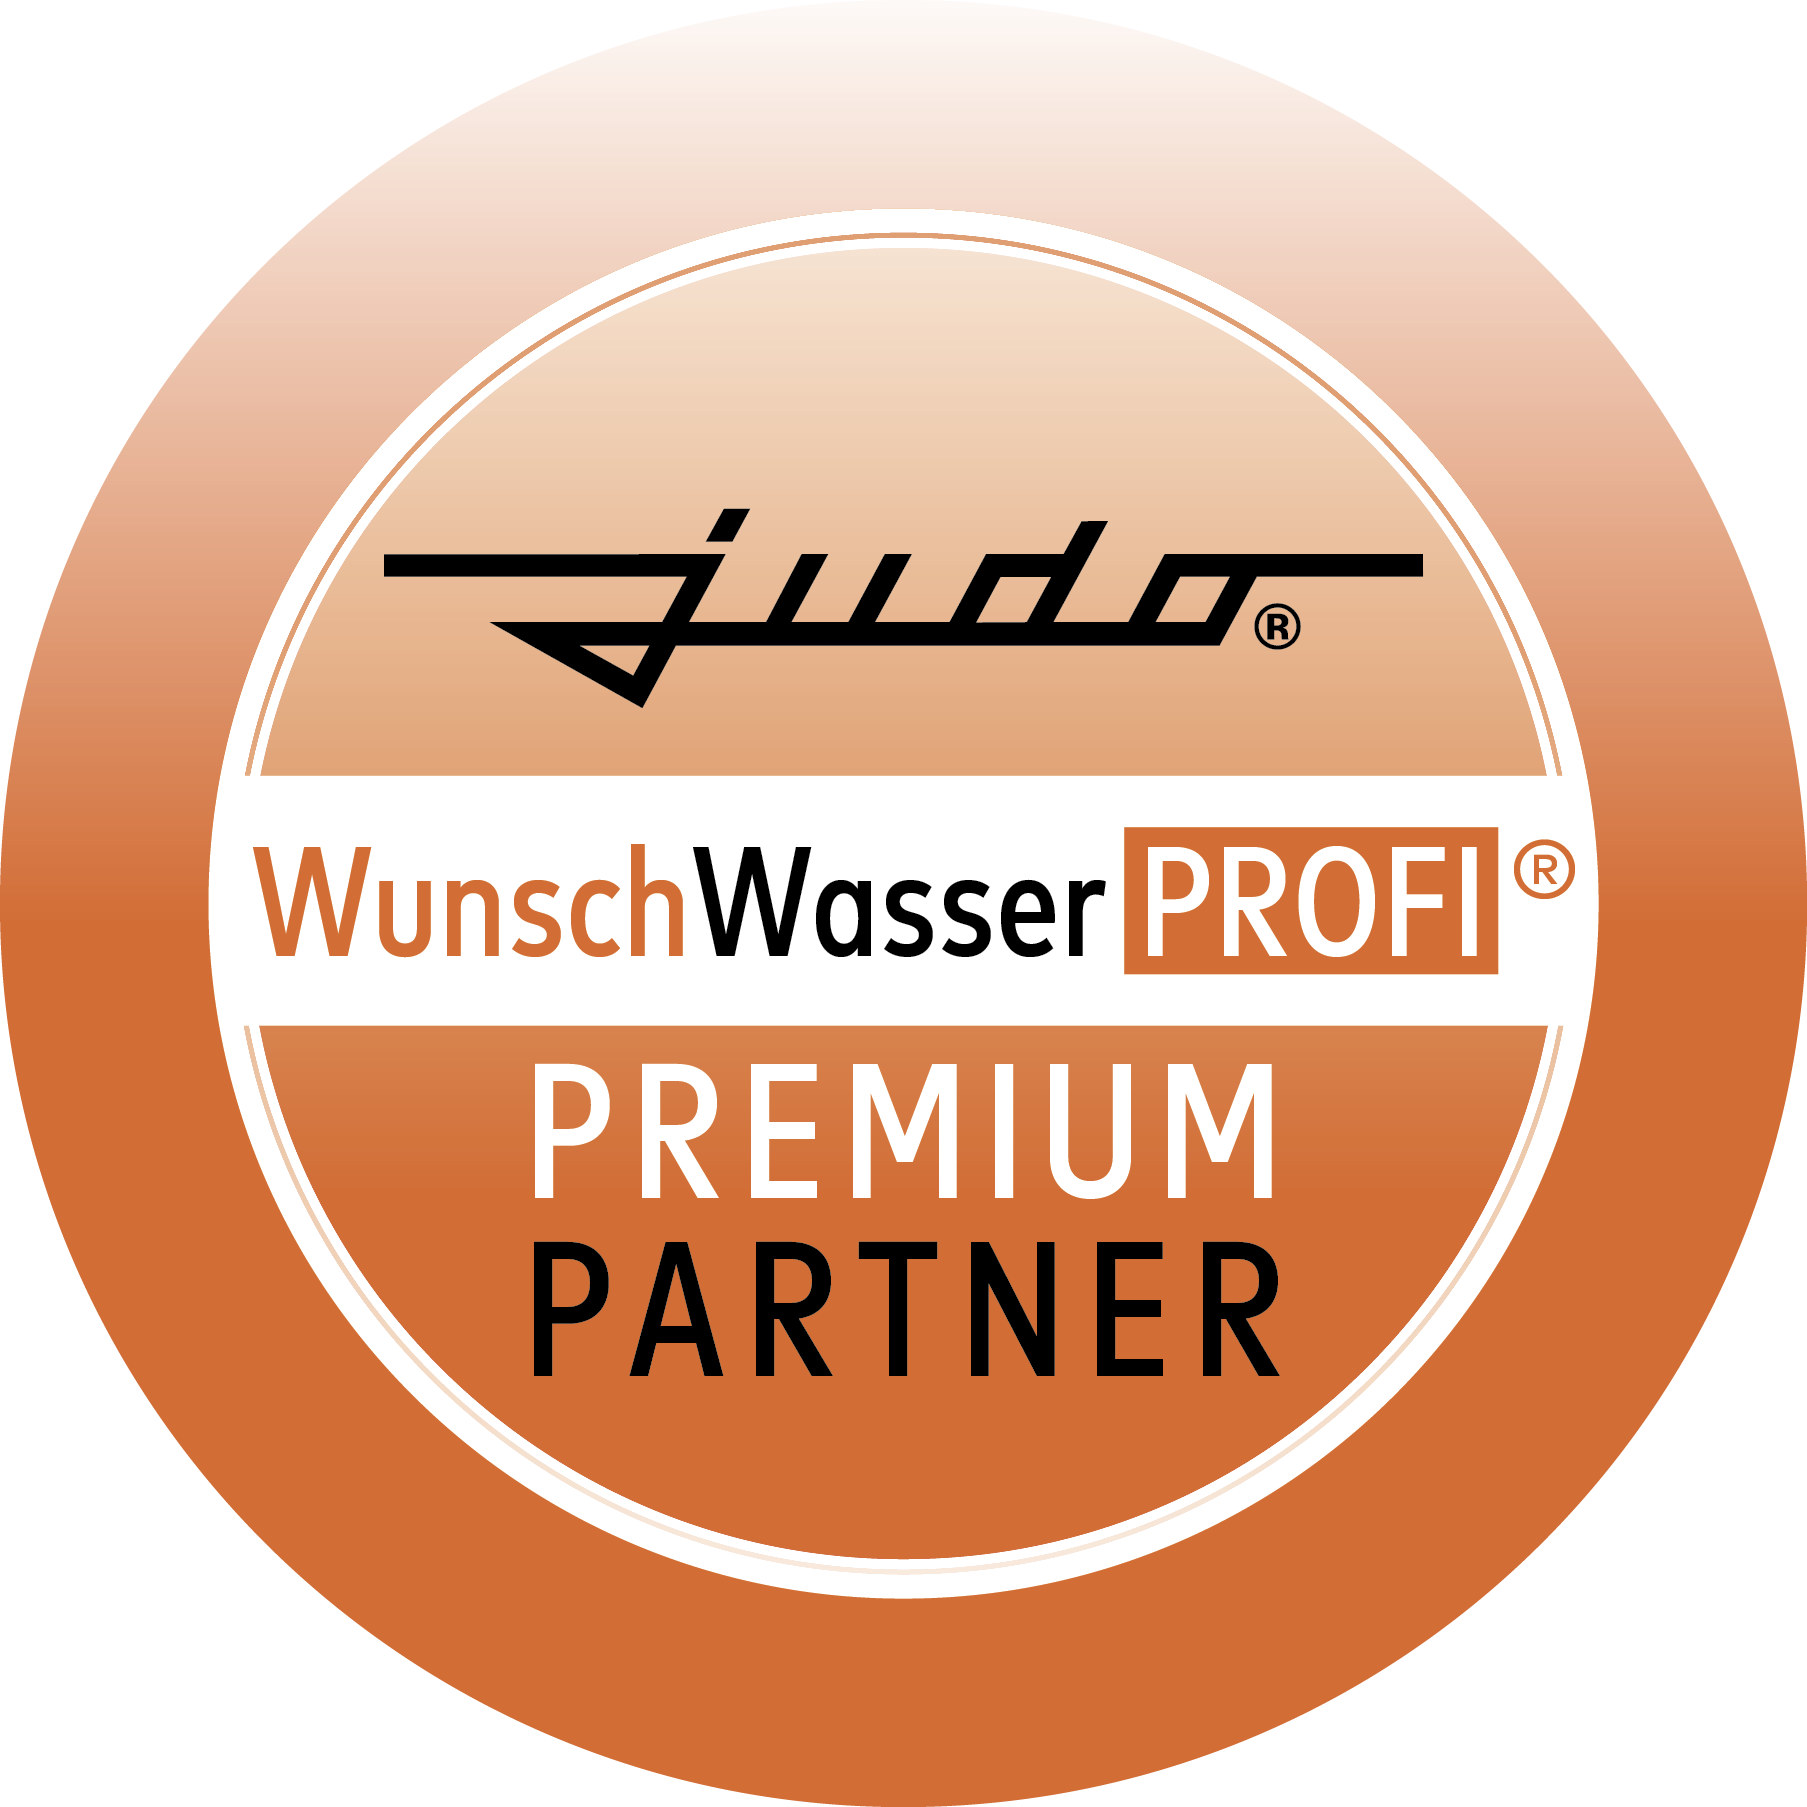 WunschWasser PROFI Premium Partner